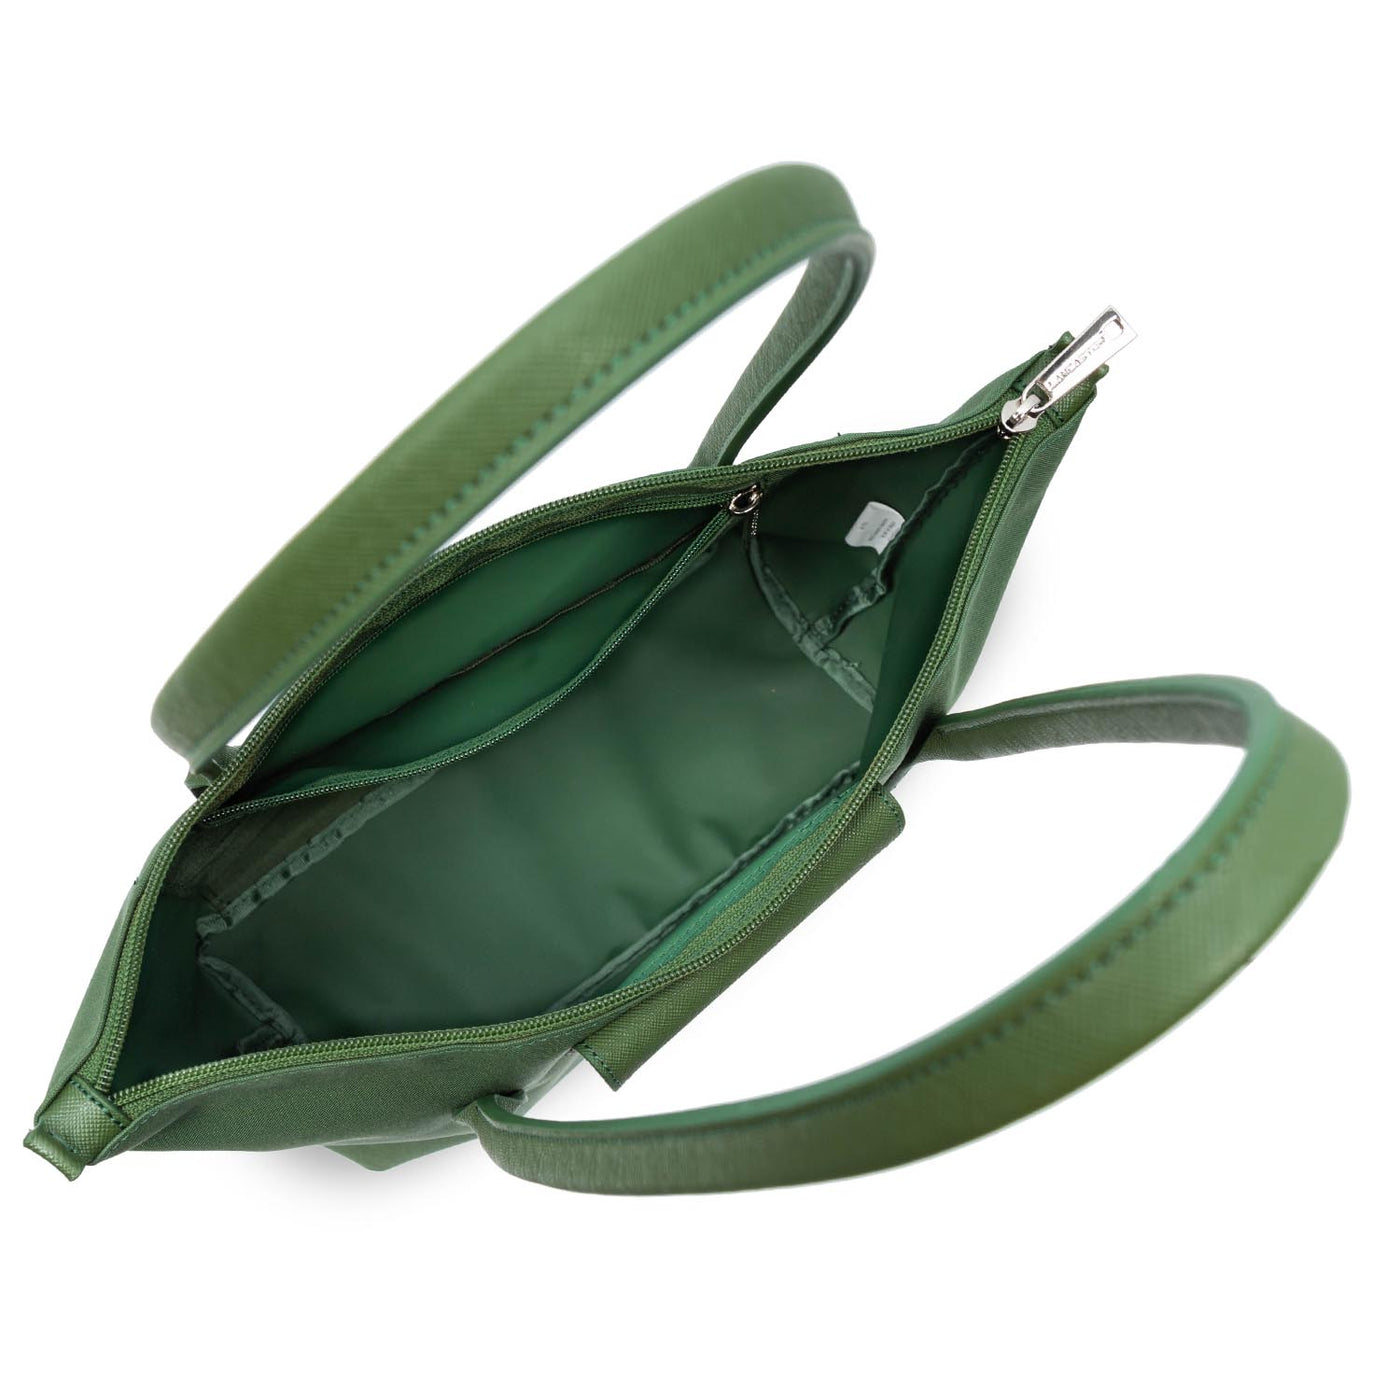 m tote bag - smart kba #couleur_vert-pin